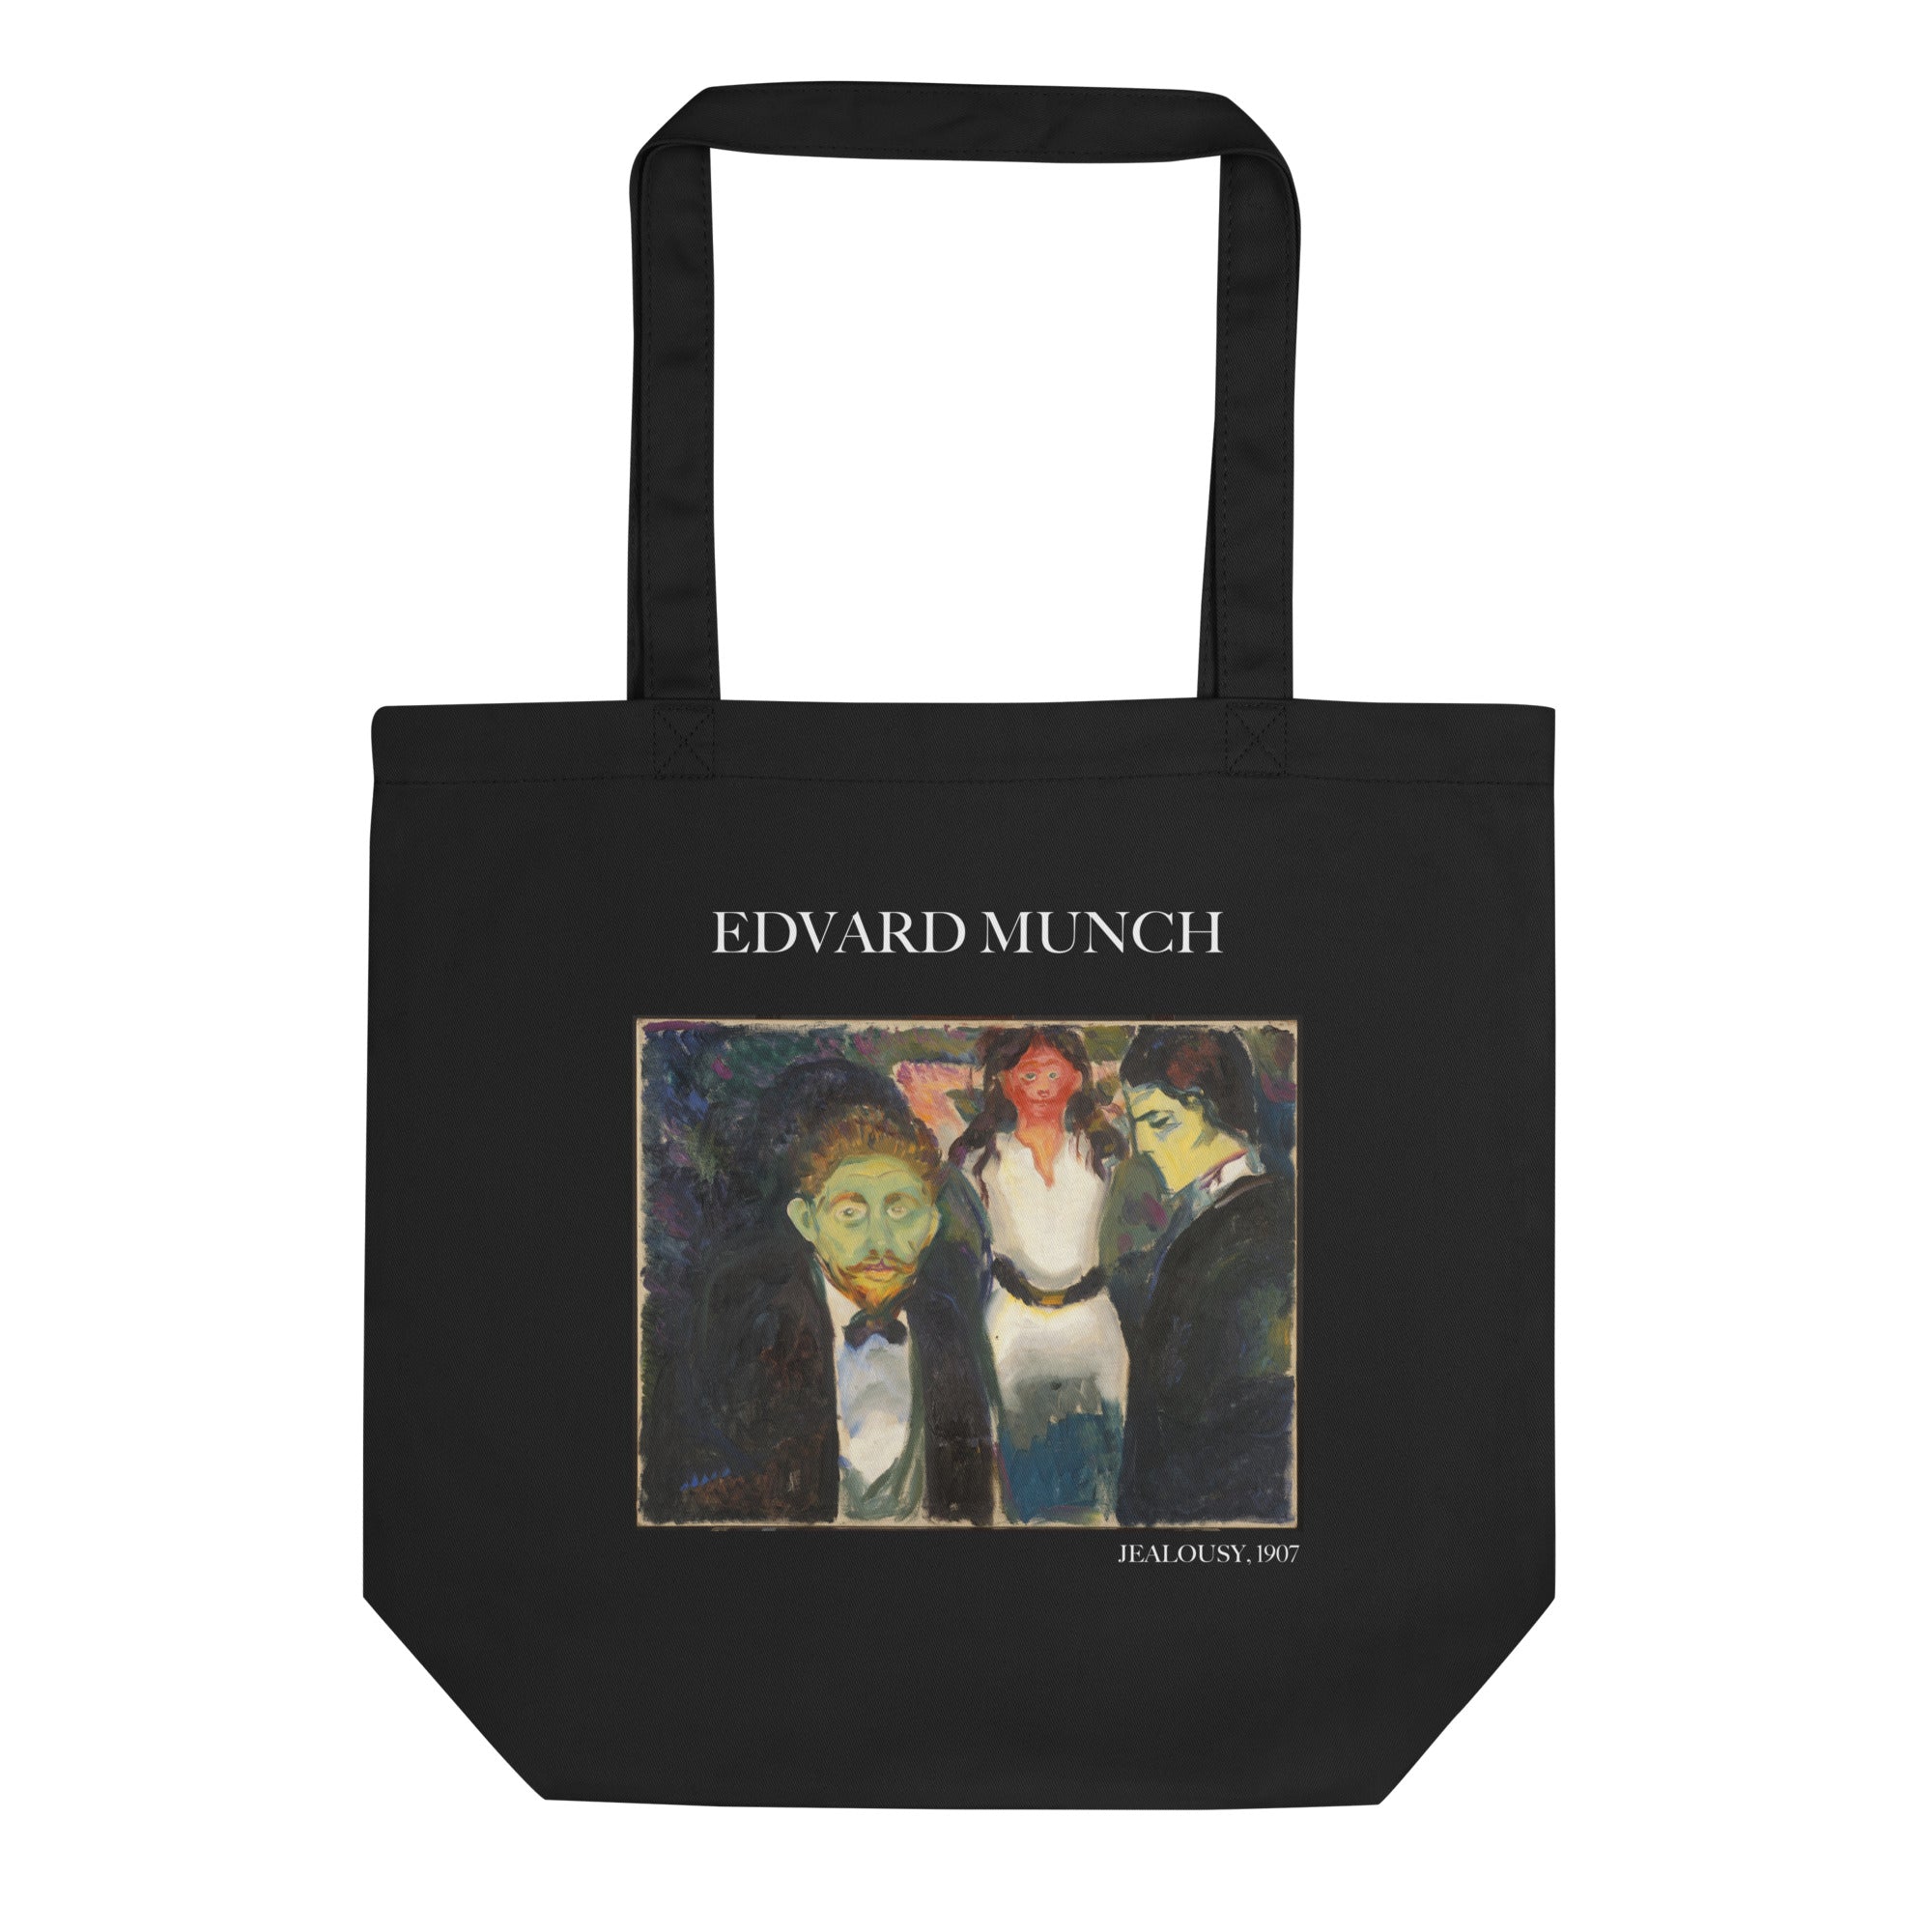 Edvard Munch 'Vampir' berühmtes Gemälde Tragetasche | Umweltfreundliche Kunst Tragetasche